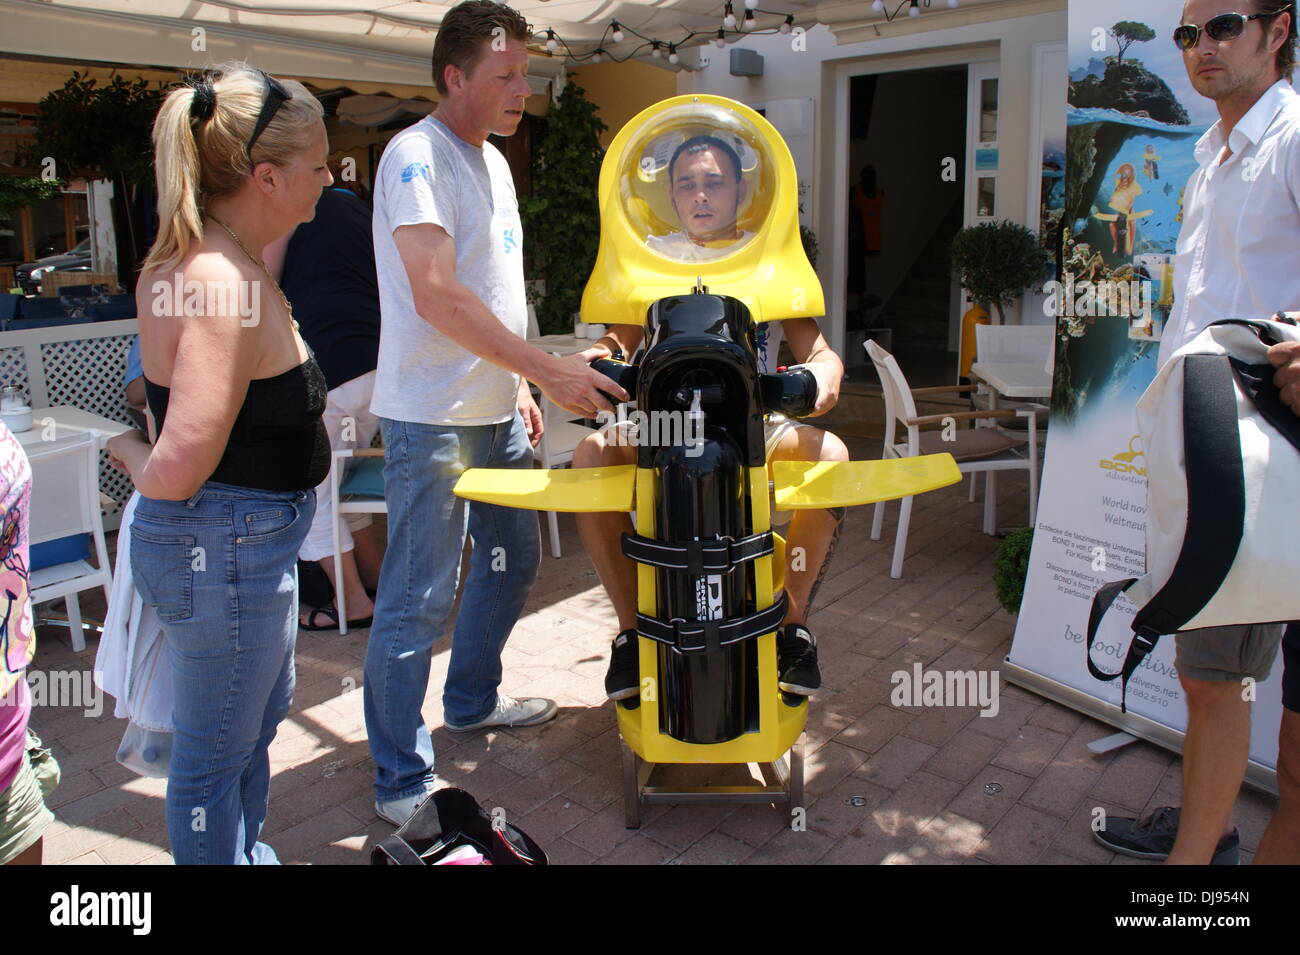 Les tests de plongeurs sous-marin Mini Oneman à Port Andratx. Majorque, Espagne - 10.06.2012 Banque D'Images